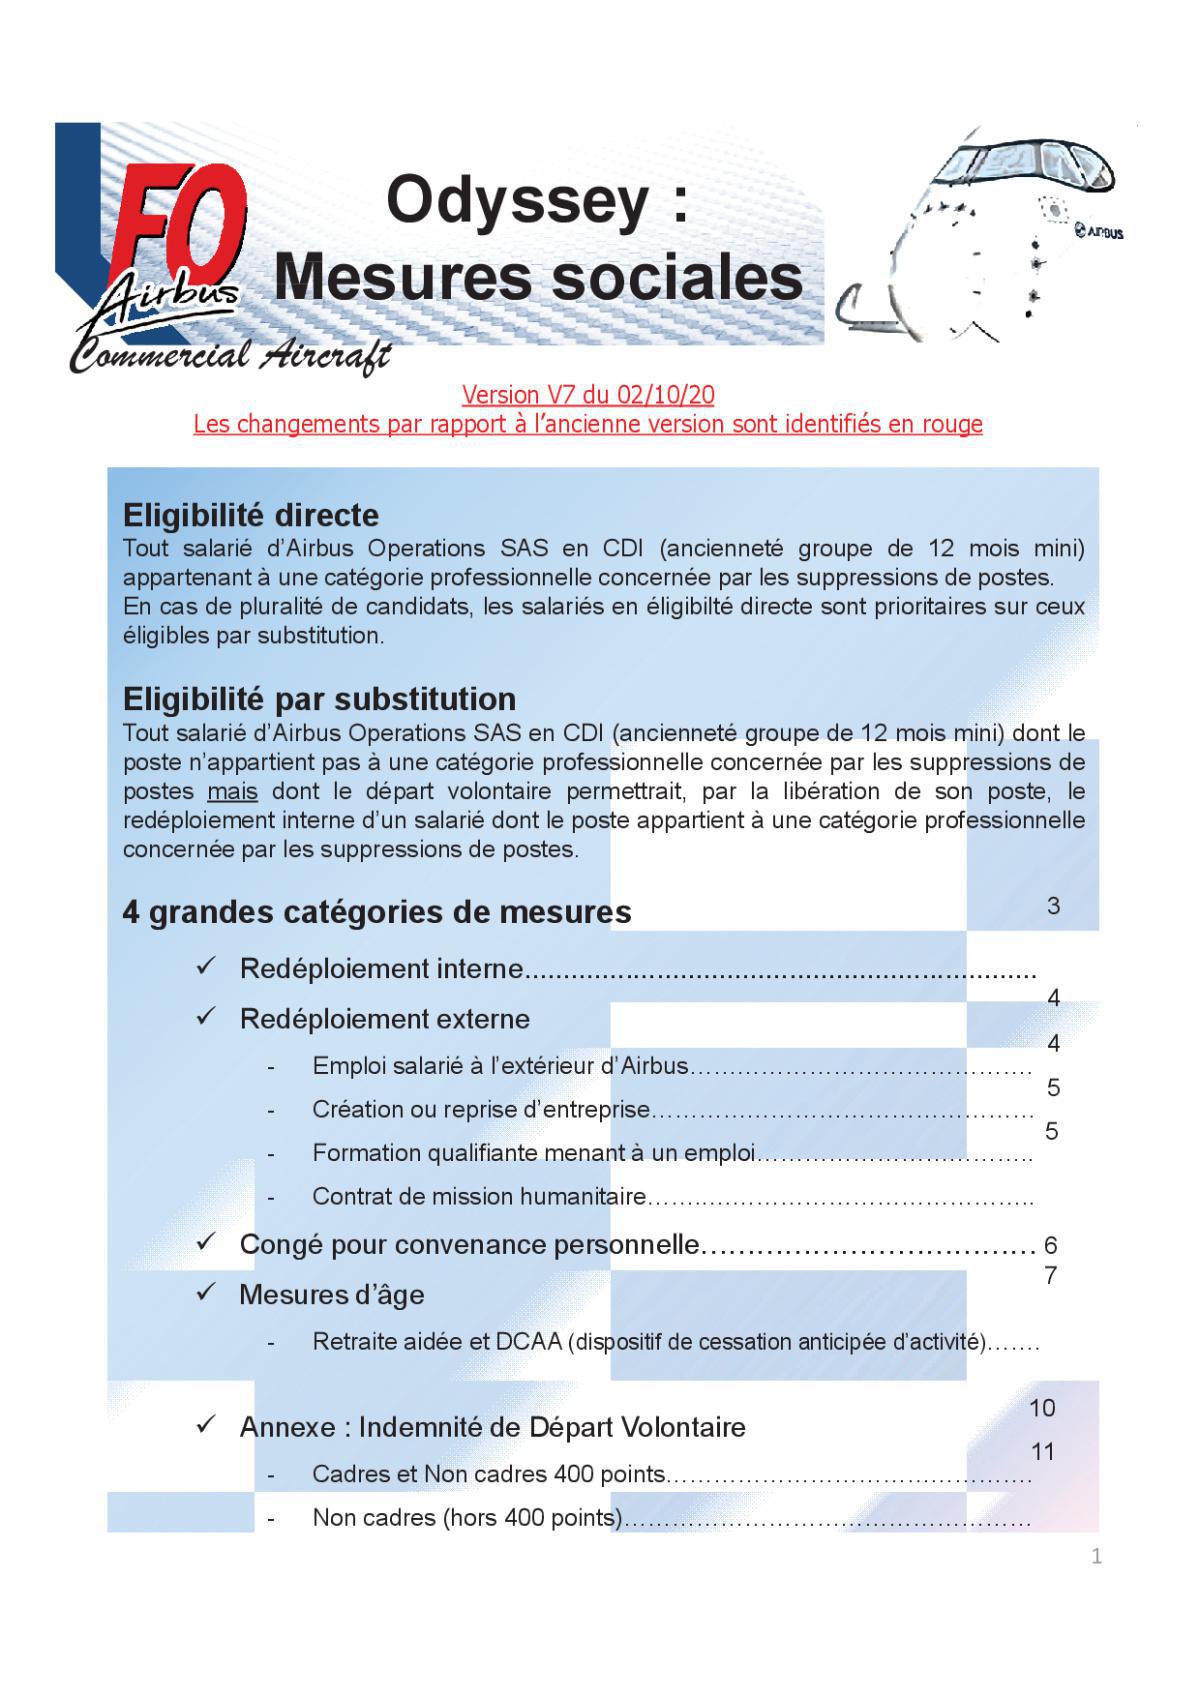 ODYSSEY : Mesures sociales – Réunion 7 